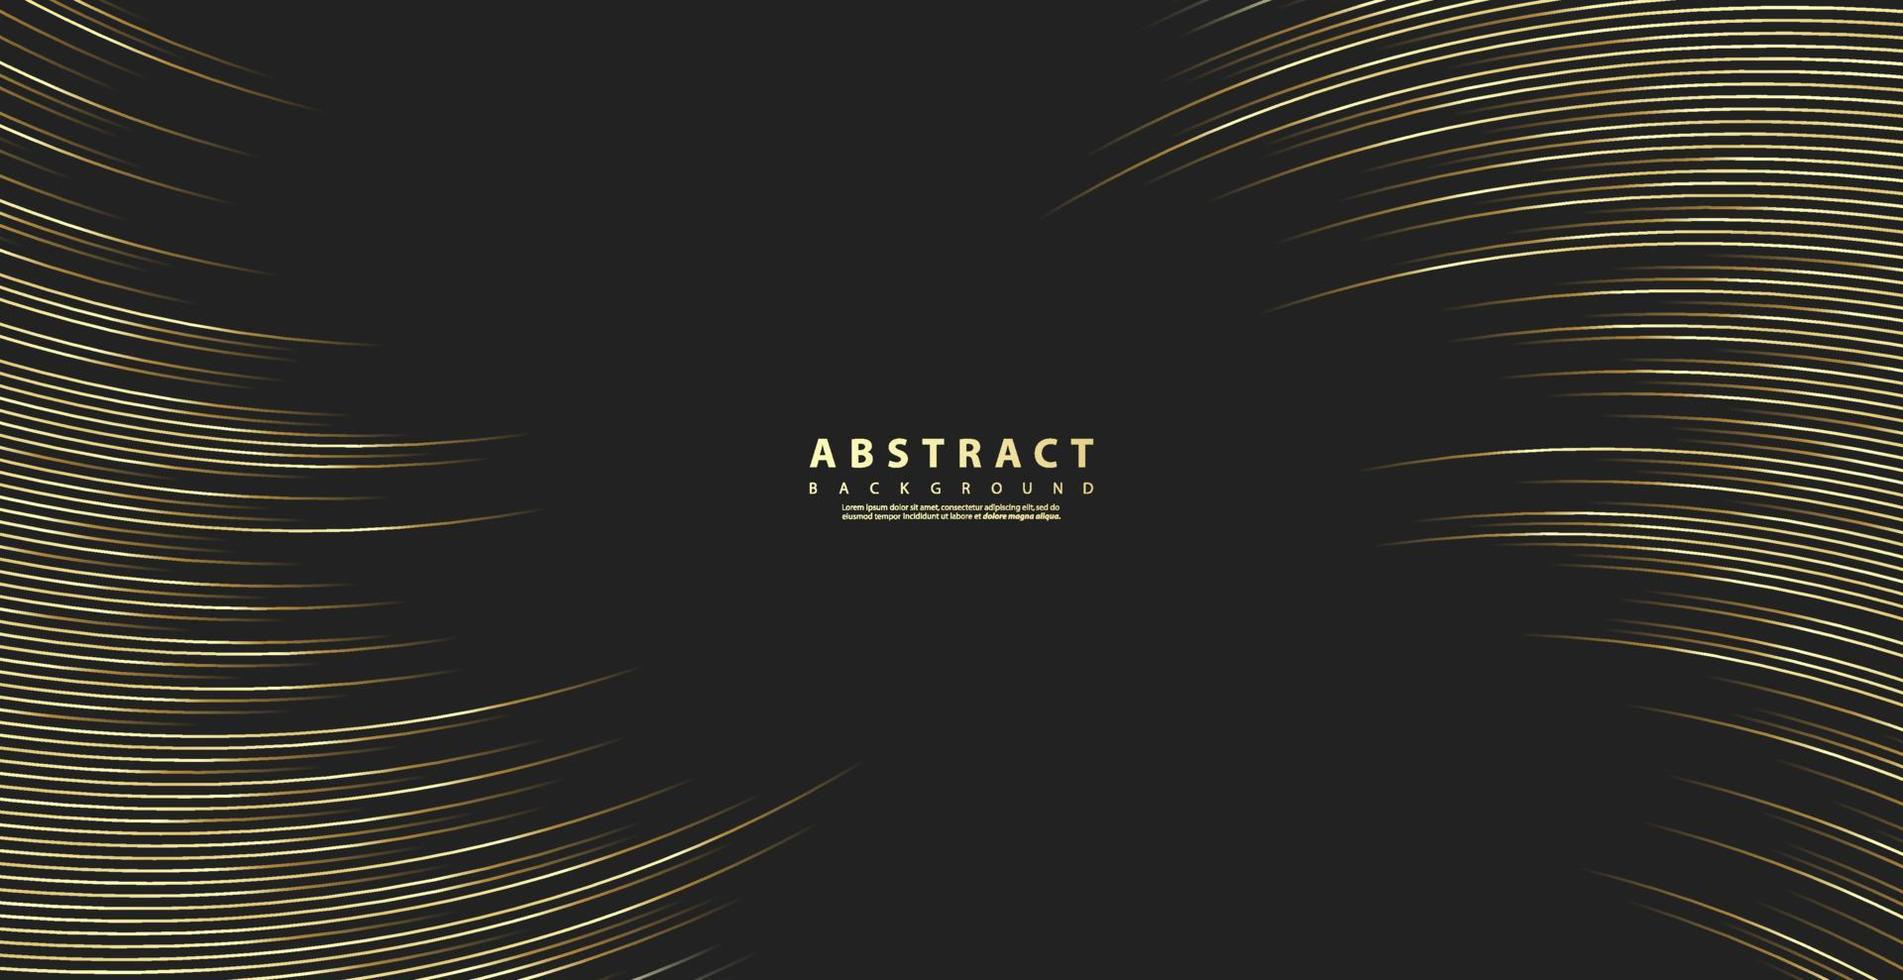 abstract goud luxueus kleur achtergrond met diagonaal lijnen voor uw ontwerp. modern luxe concept. vector illustratie